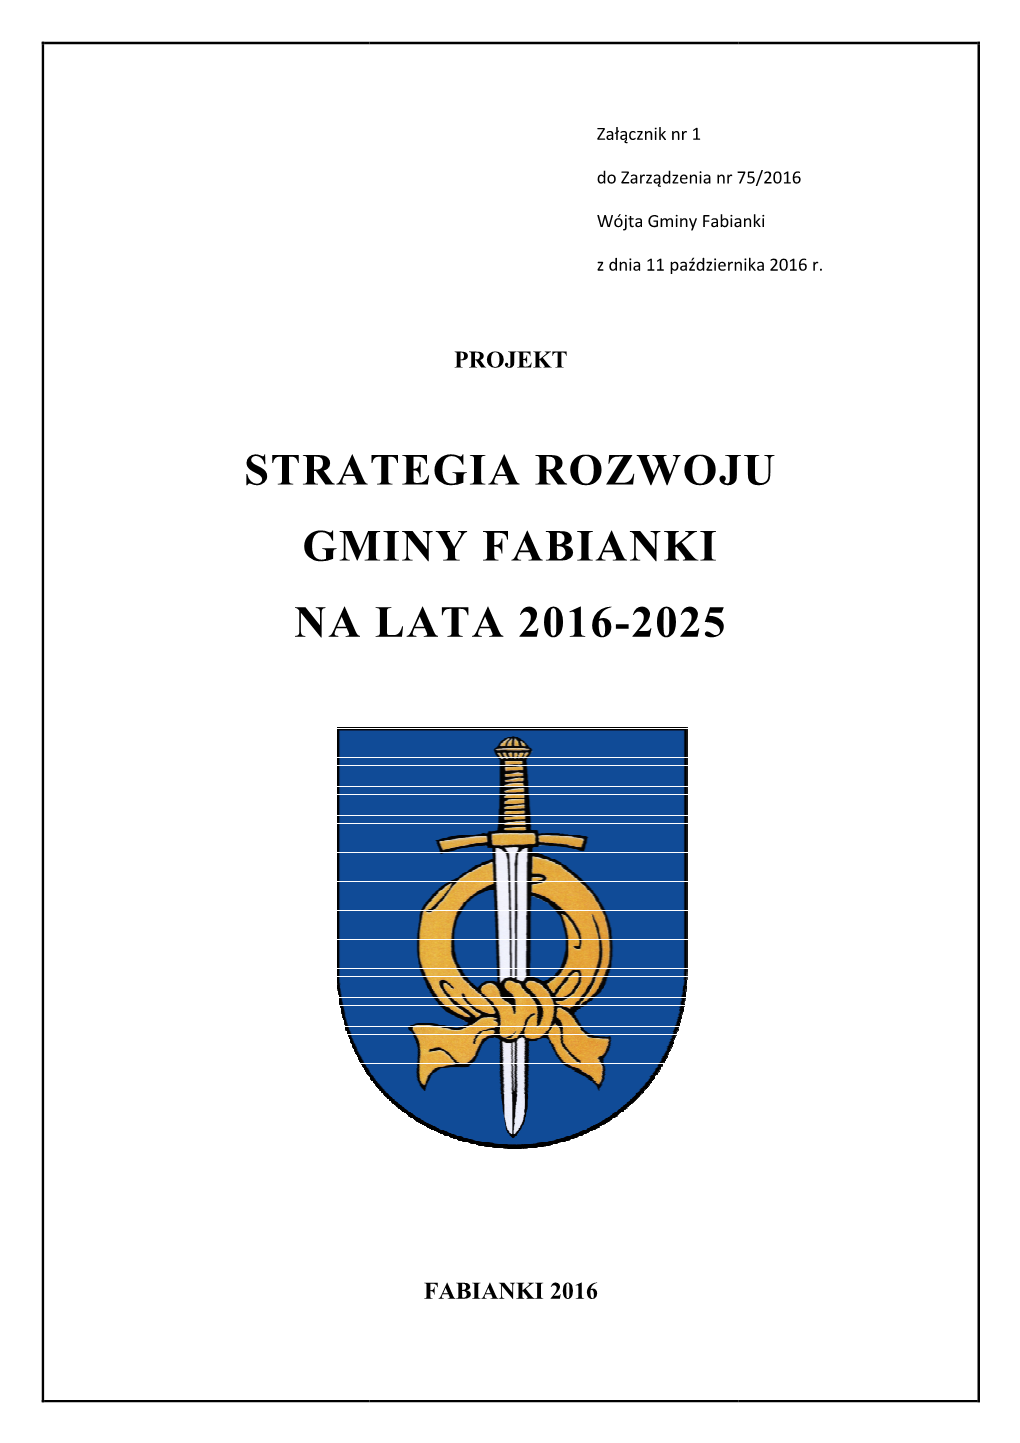 Załącznik 1 Strategia Rozwoju Gminy Fabianki Projekt